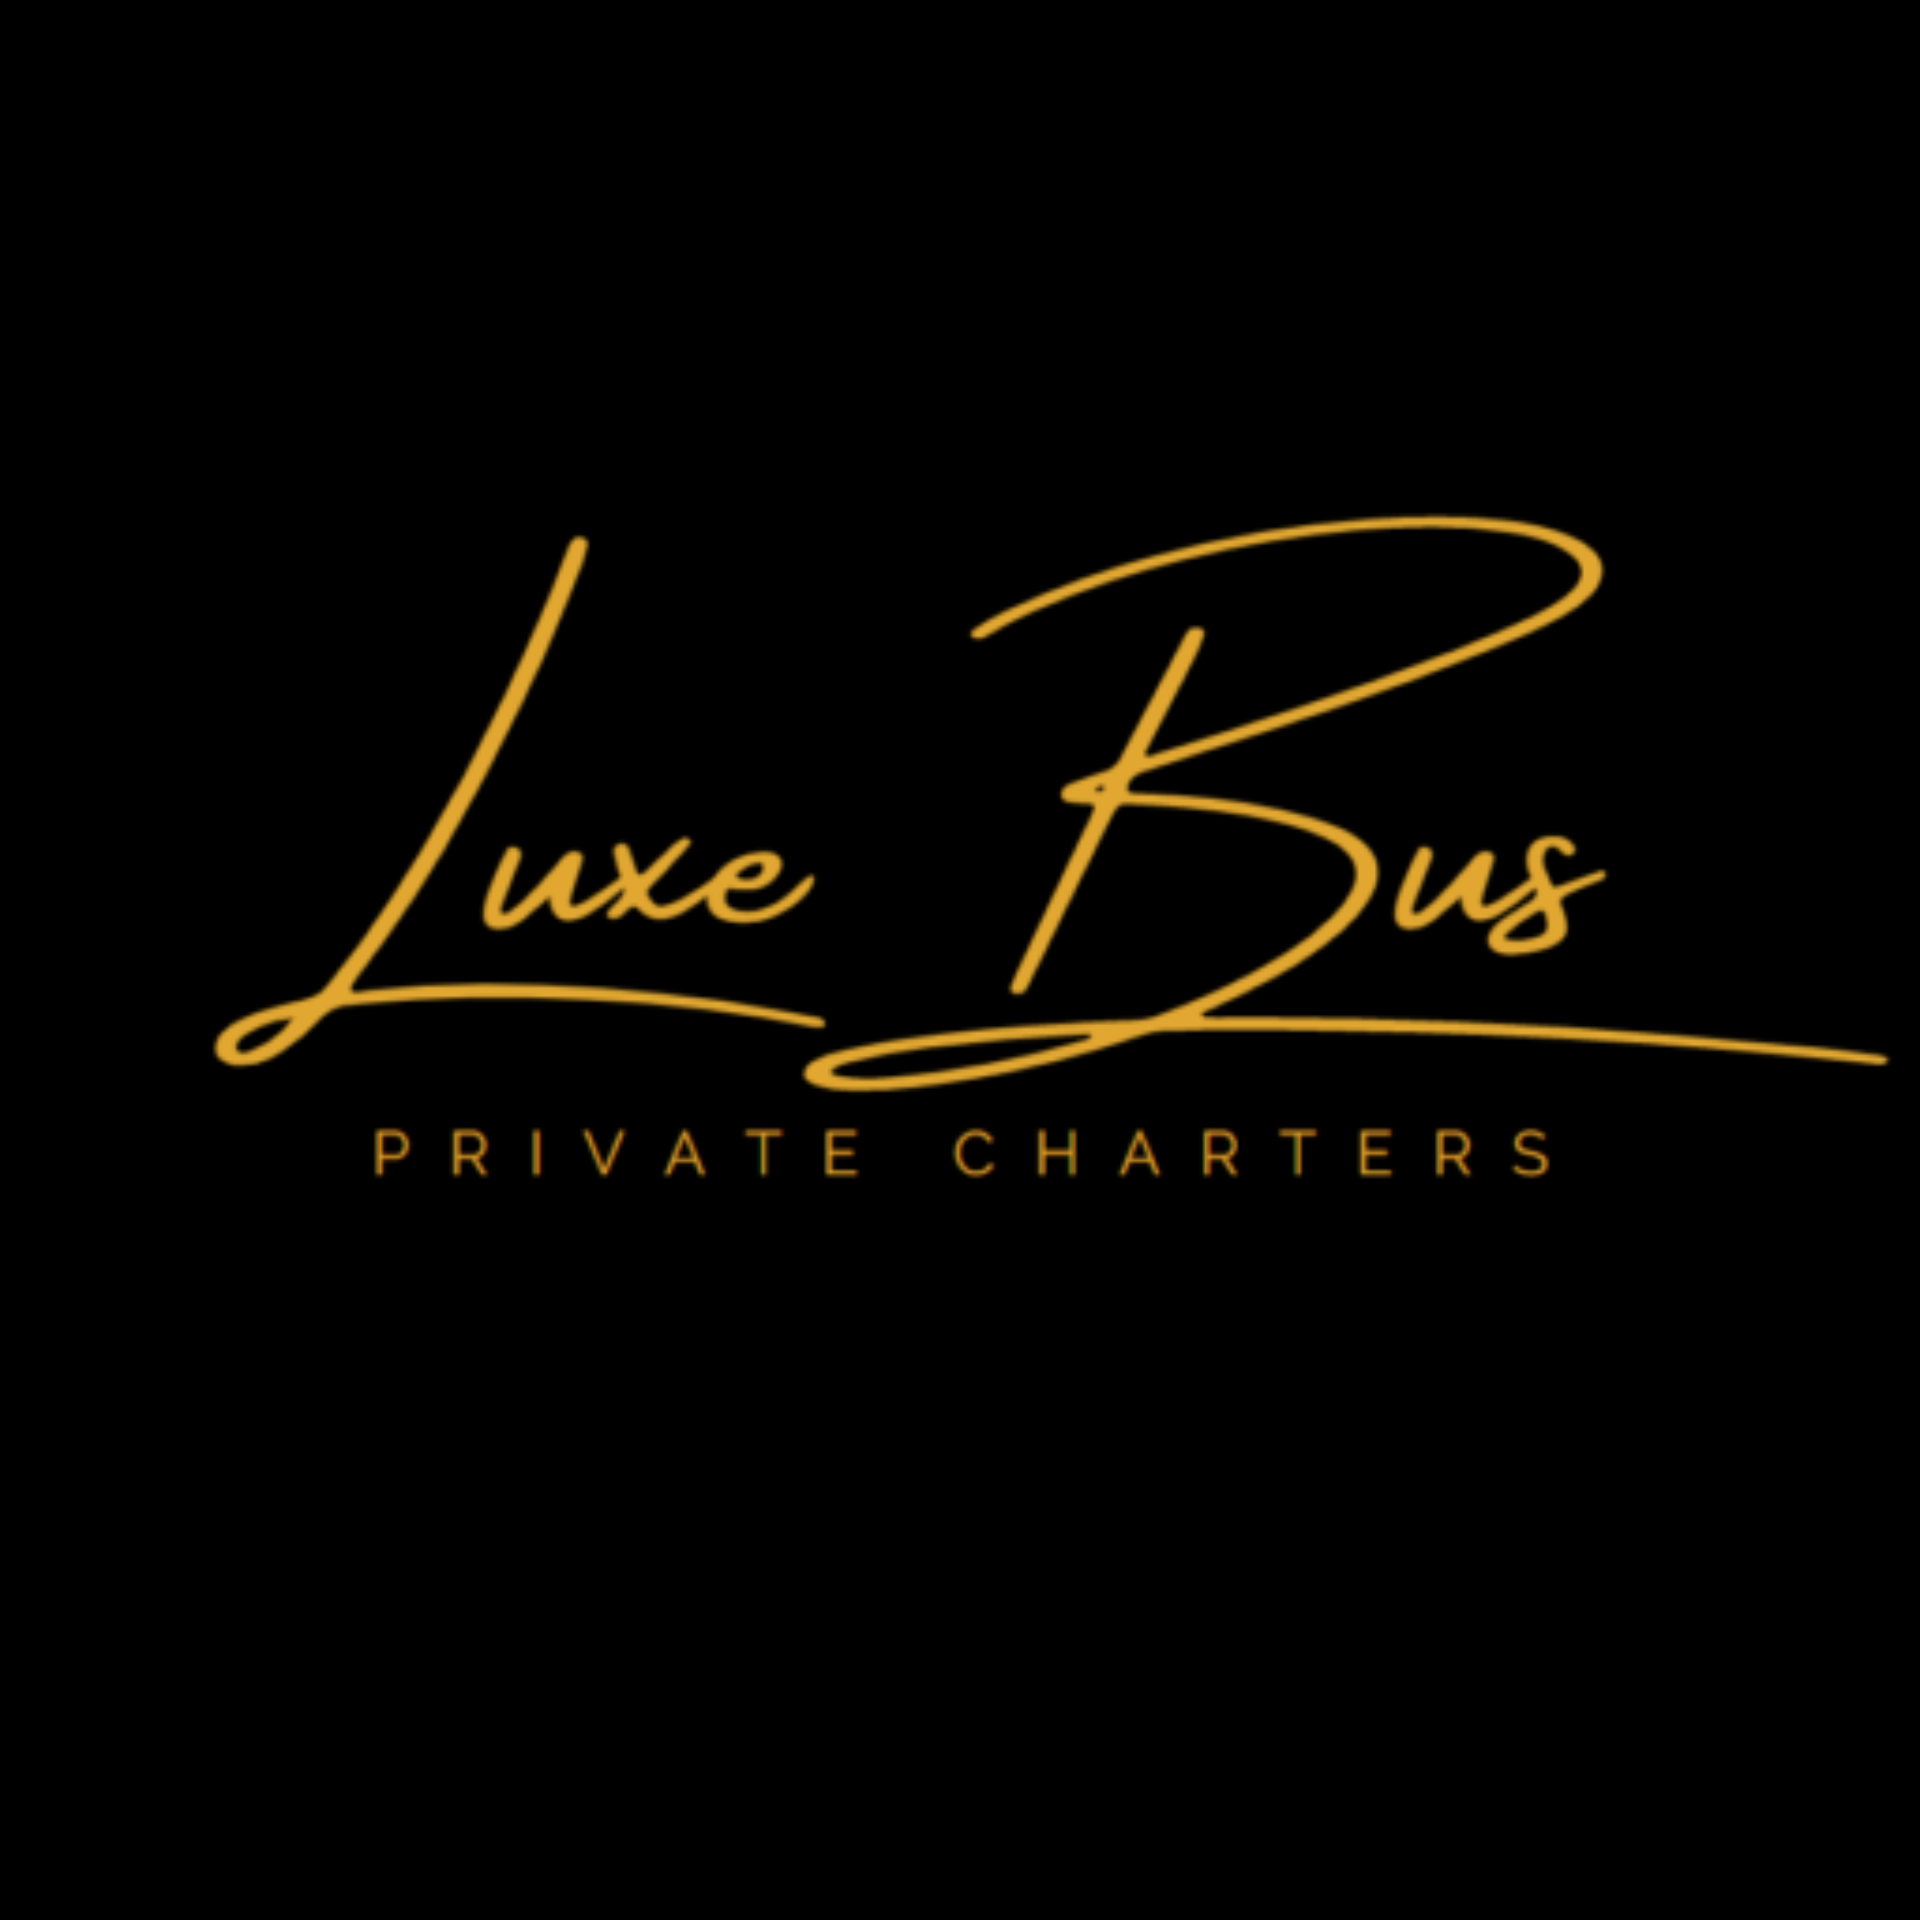 Luxe Bus Logo